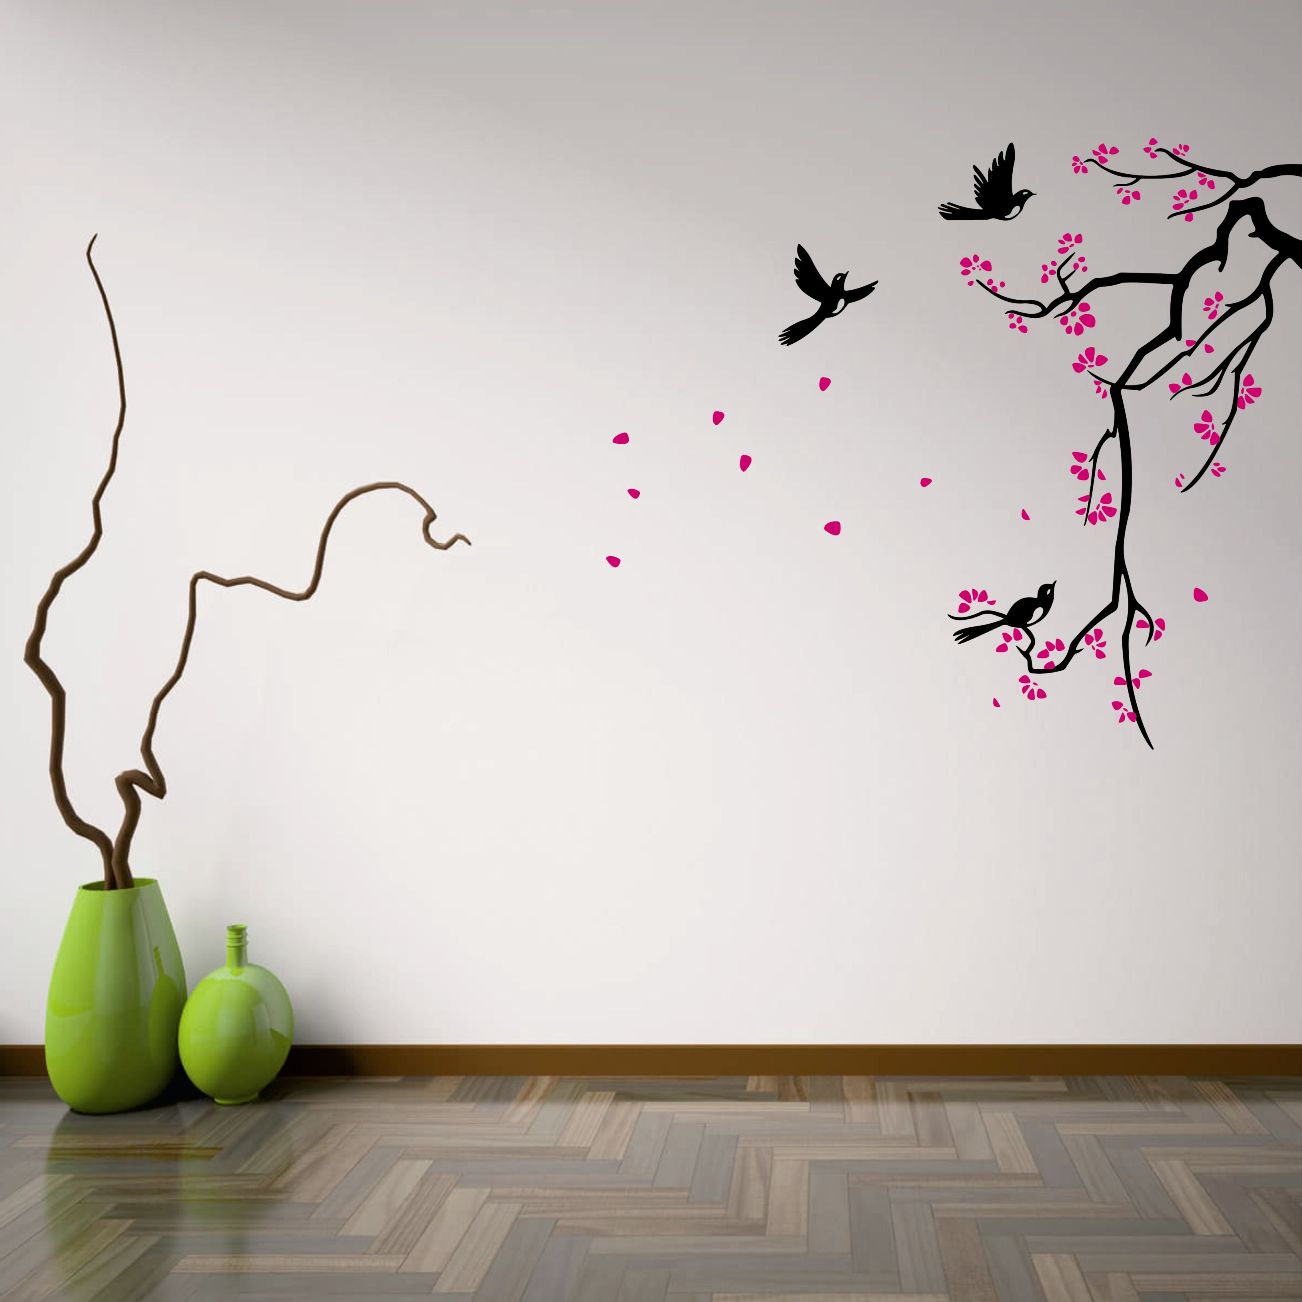 طرح های خوشگل و اسپرت شاد برای دیوار خانه نوعروس